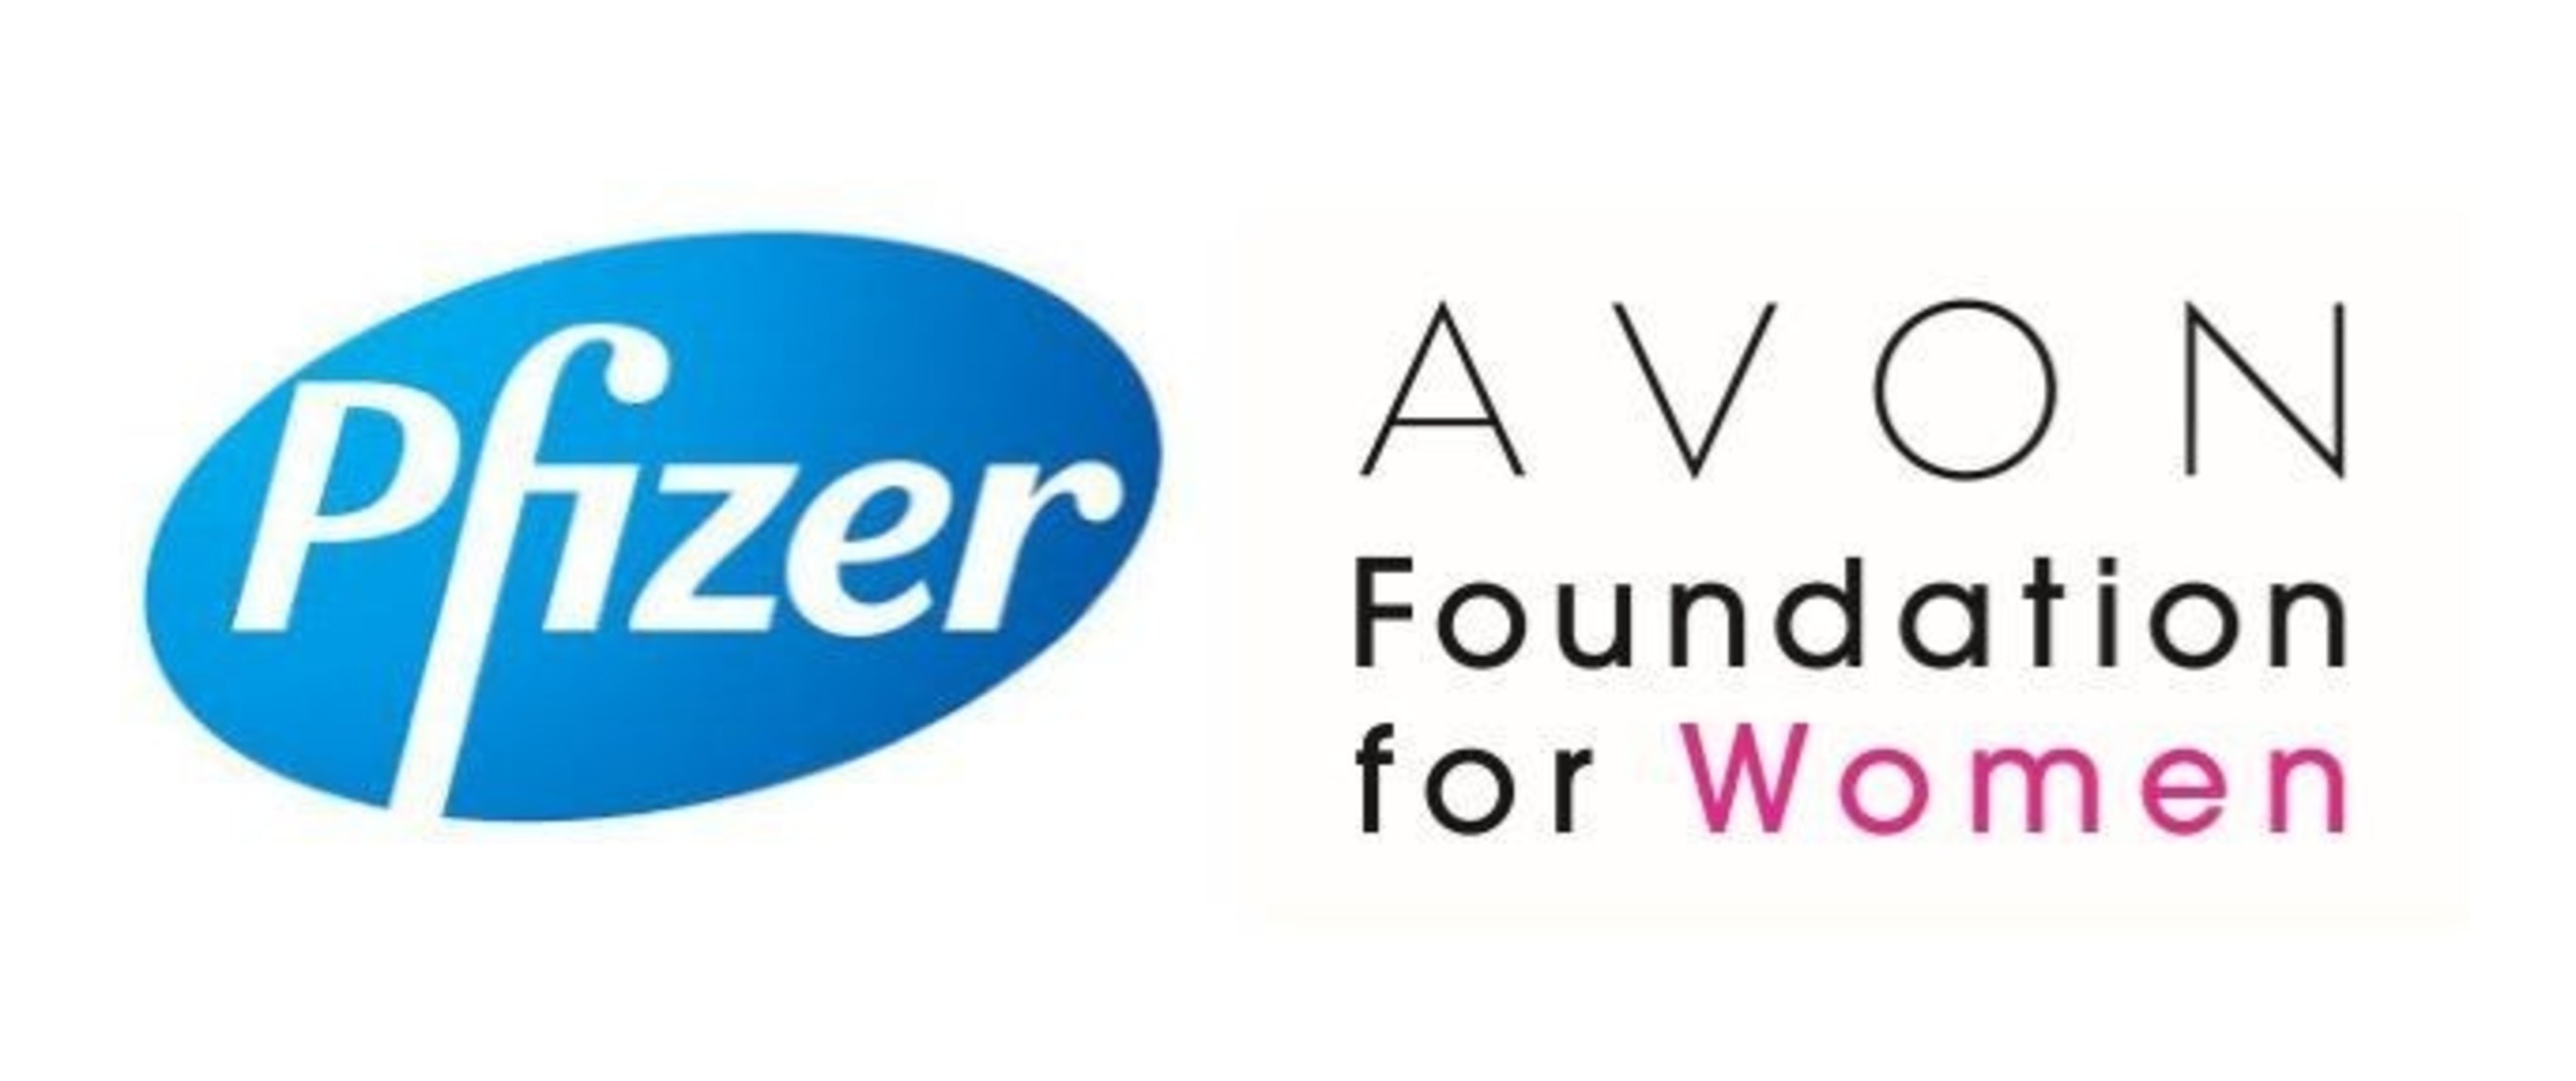 Avon Foundation-Pfizer Logo